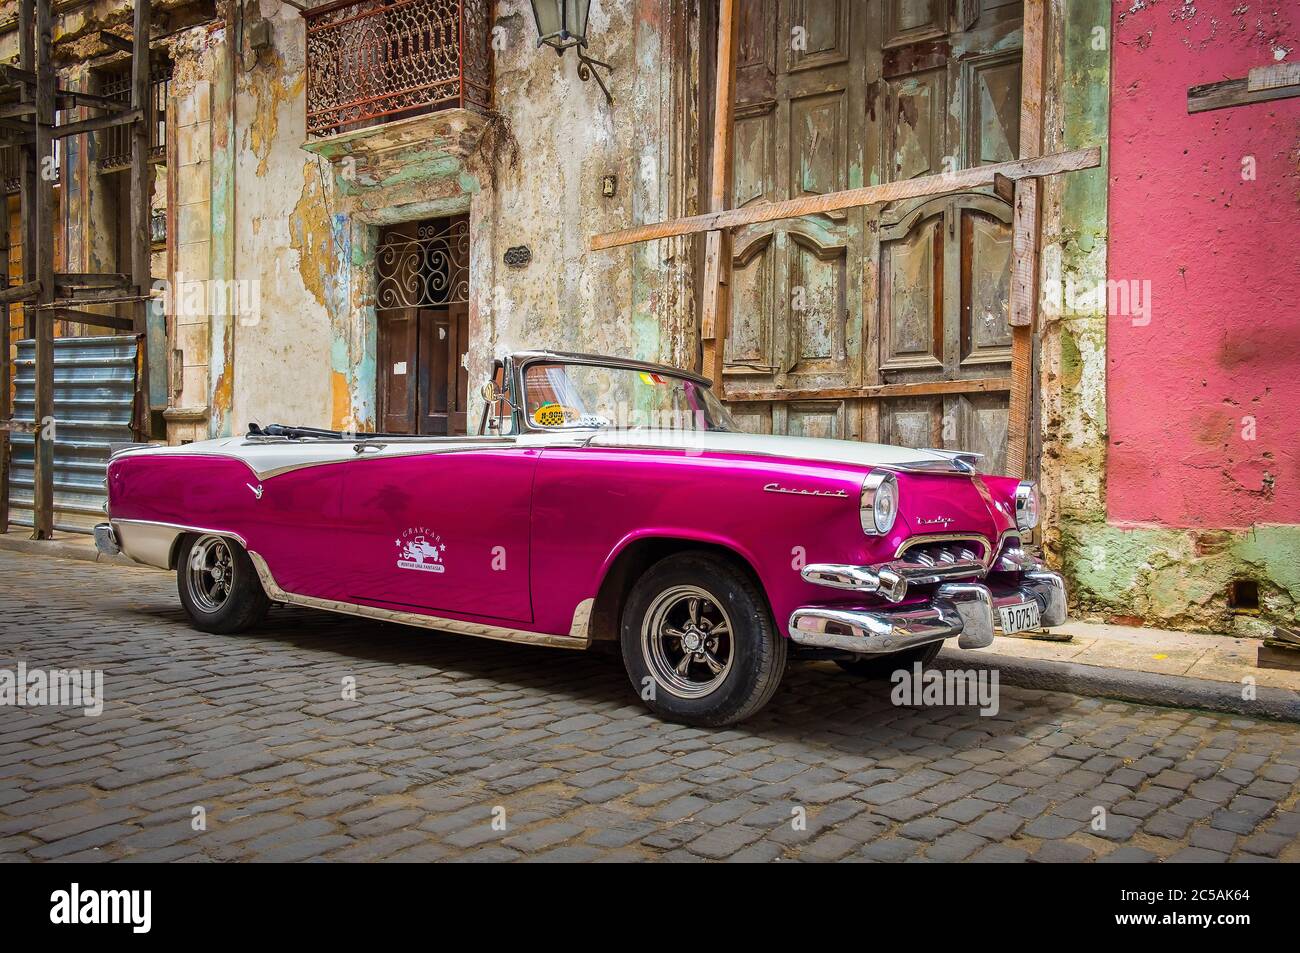 La Havane, Cuba, 2019 juillet, location de voiture Dodge pourpre 50s garée dans la rue dans la partie la plus ancienne de la ville Banque D'Images